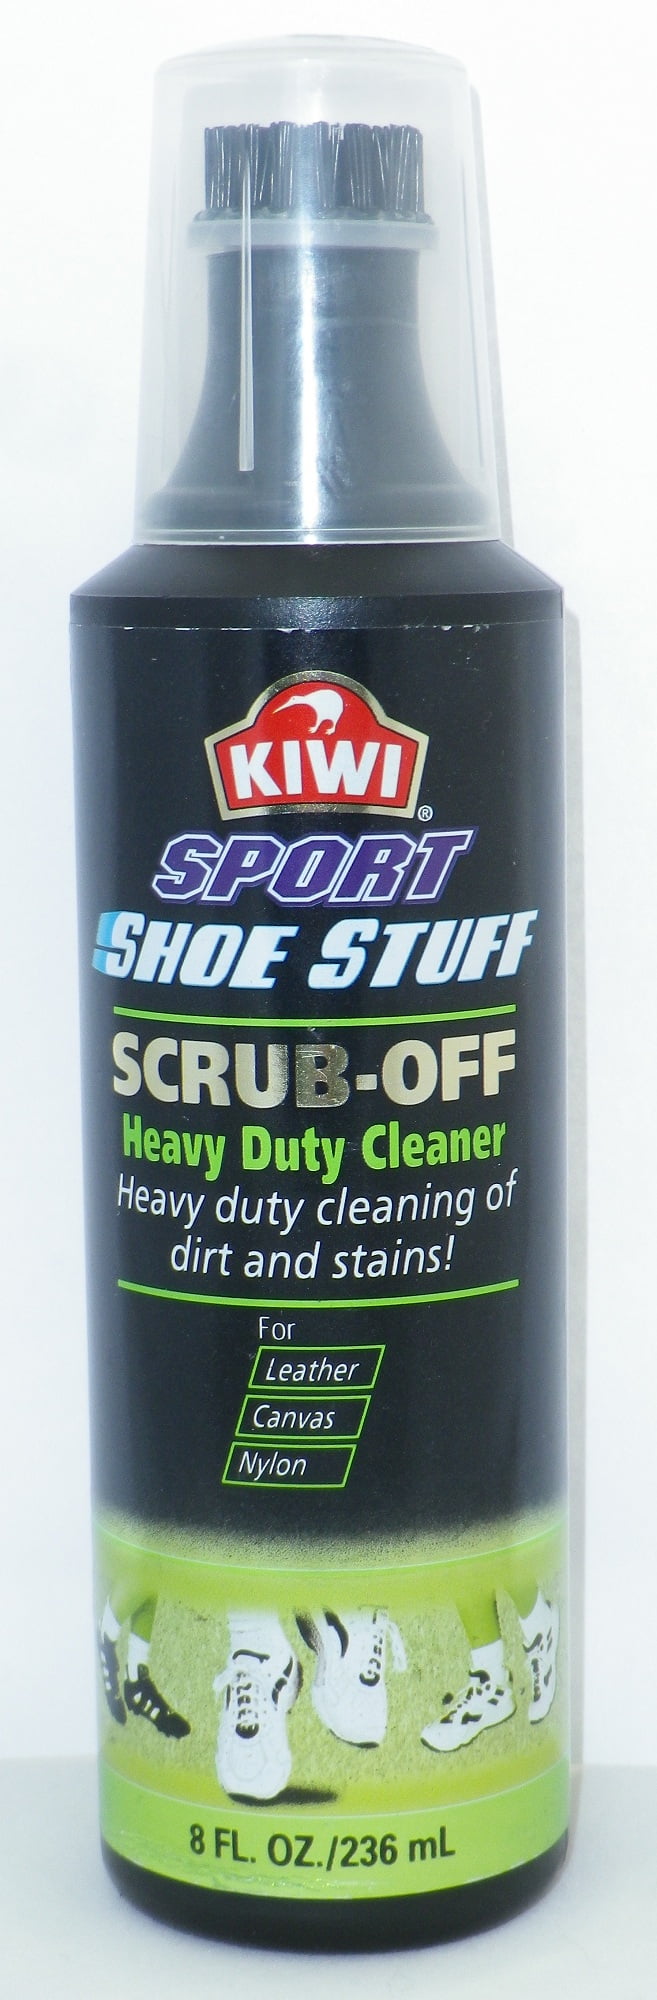 Kiwi Sport Scrub-Off Heavy Duty Footwear Cleaner - 8 oz